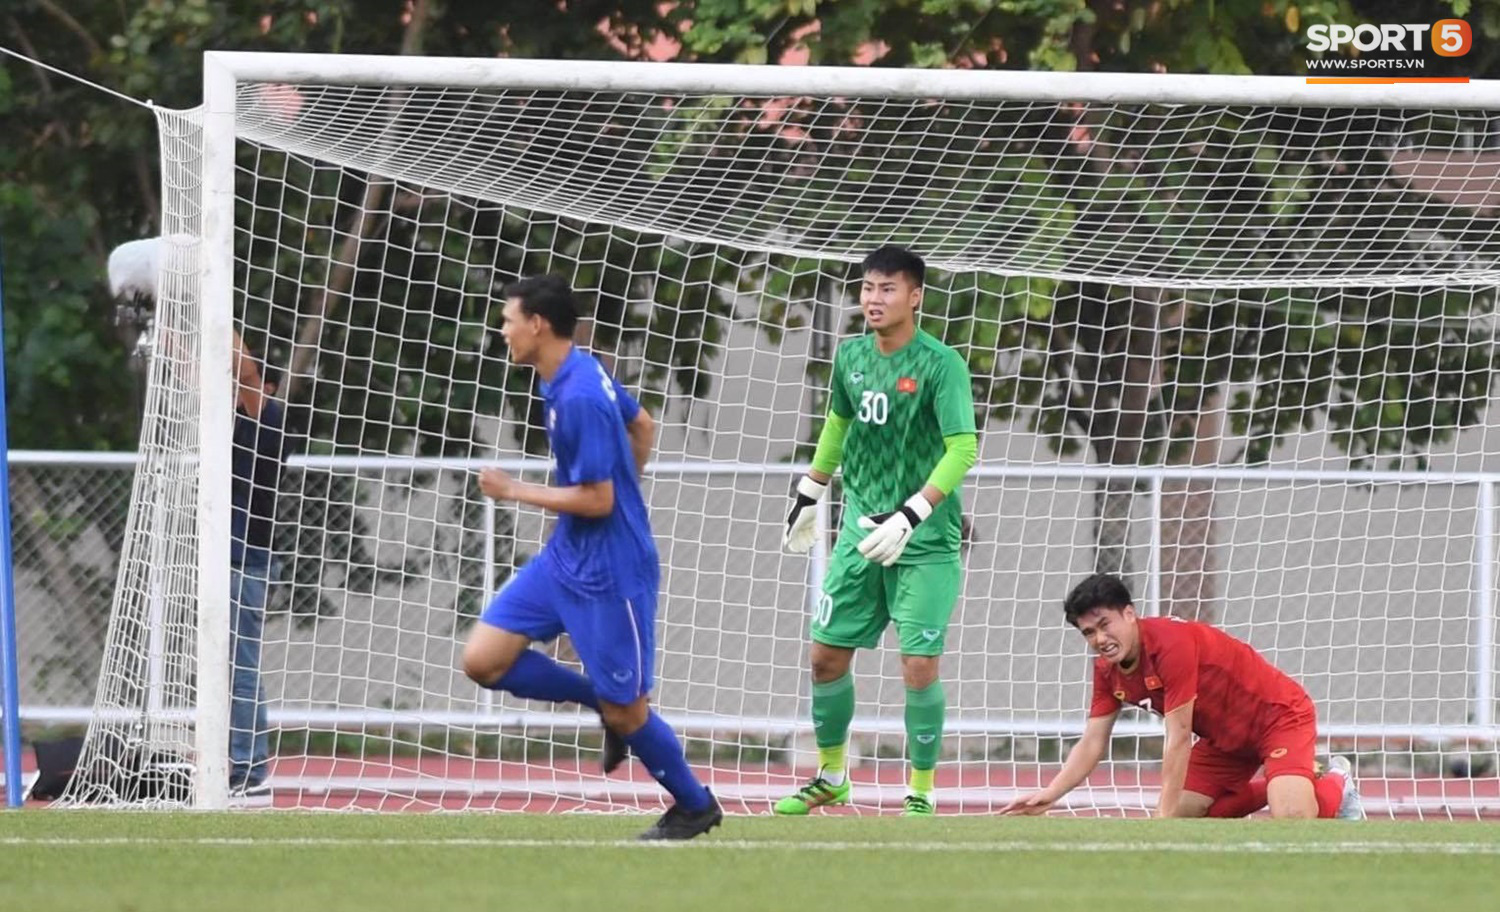 Thủ môn U22 Việt Nam mắc sai lầm, fan kêu trời: Bóng đá Việt Nam chỉ toang vì thủ môn - Ảnh 2.